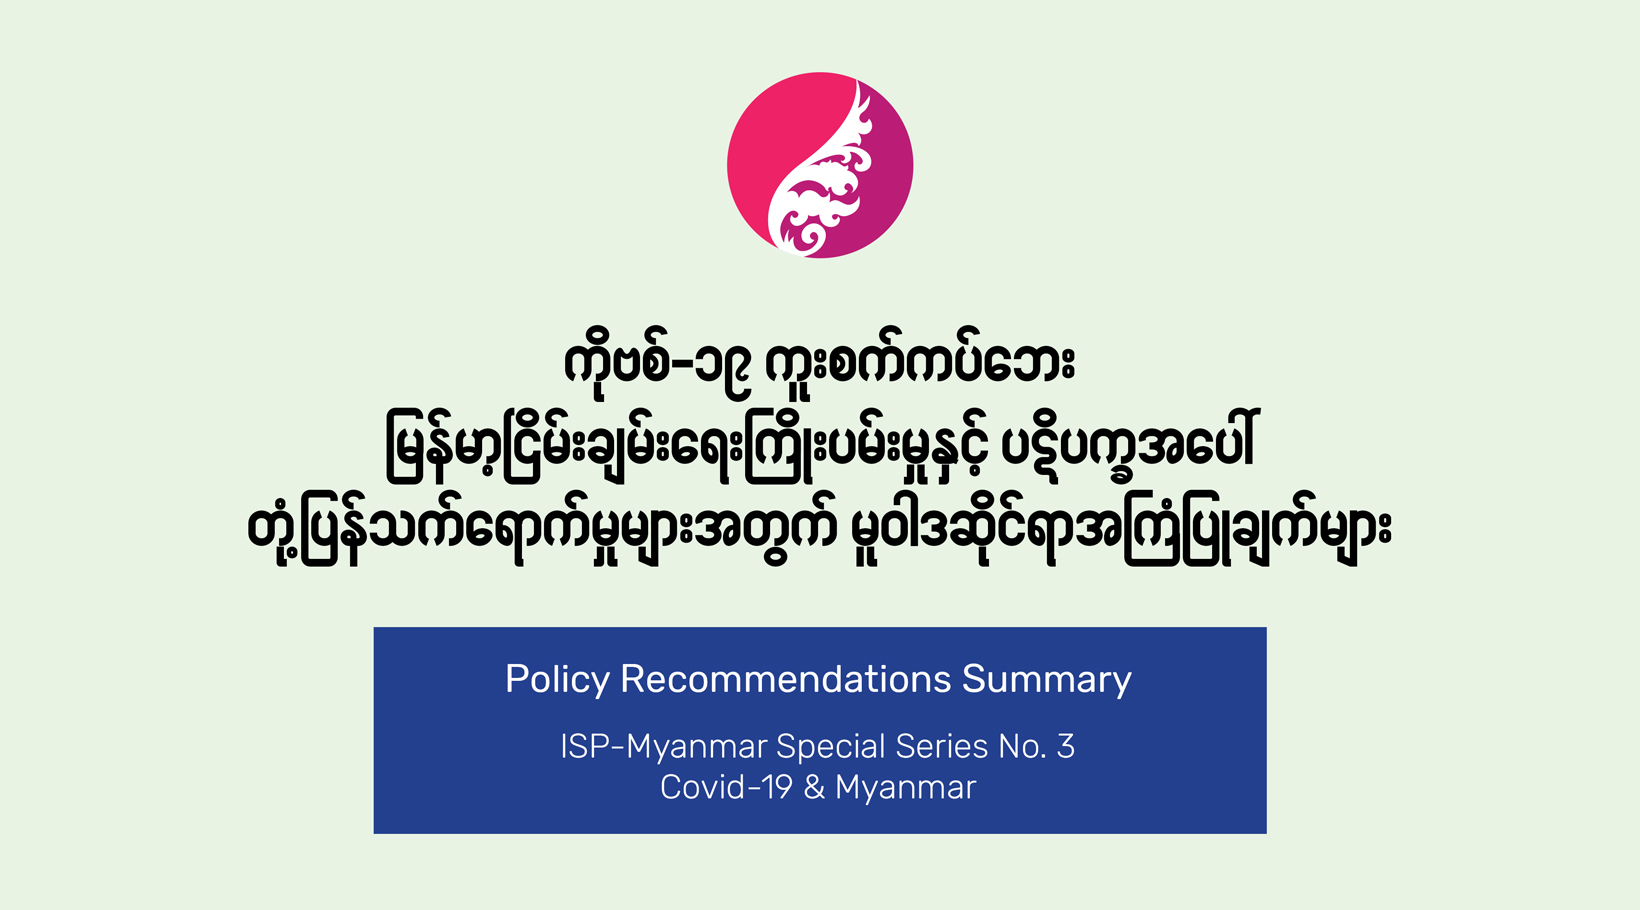 ကိုဗစ်-၁၉ ကူးစက်ကပ်ဘေး  မြန်မာ့ငြိမ်းချမ်းရေး ကြိုးပမ်းမှုနှင့် ပဋိပက္ခအပေါ်  တုံ့ပြန်သက်ရောက်မှုများအတွက် မူဝါဒဆိုင်ရာ အကြံပြုချက်များ